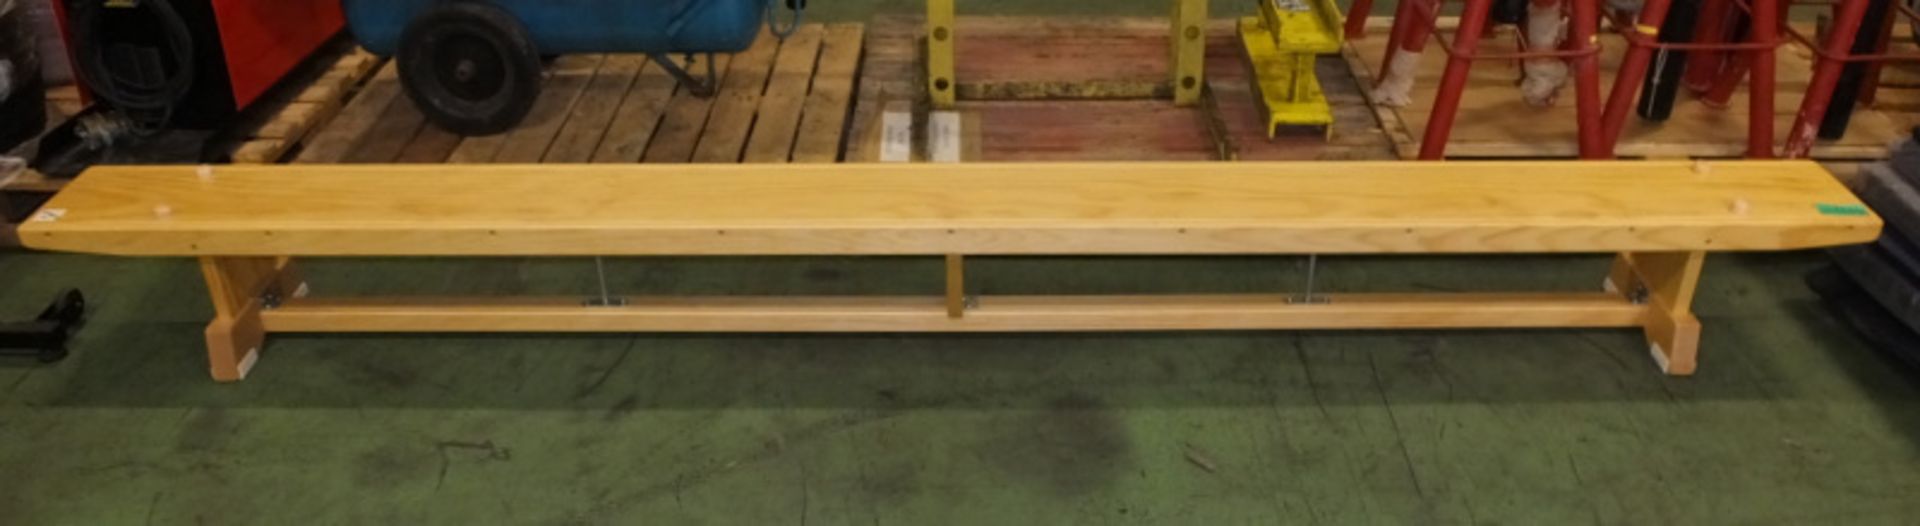 School gym bench - L 3350mm